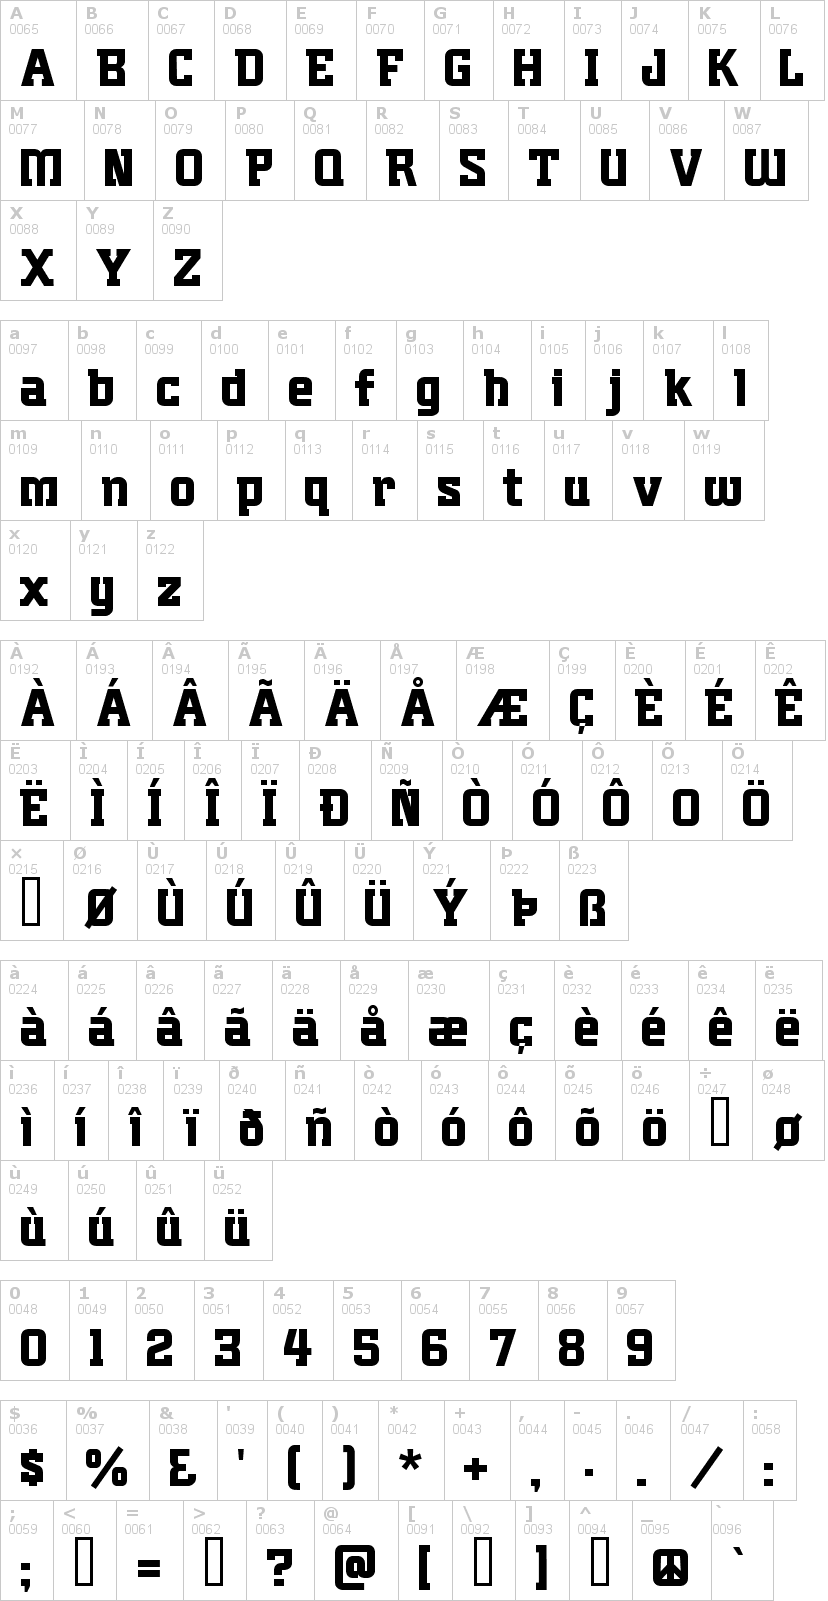 Lettere dell'alfabeto del font plumbers-gothic con le quali è possibile realizzare adesivi prespaziati